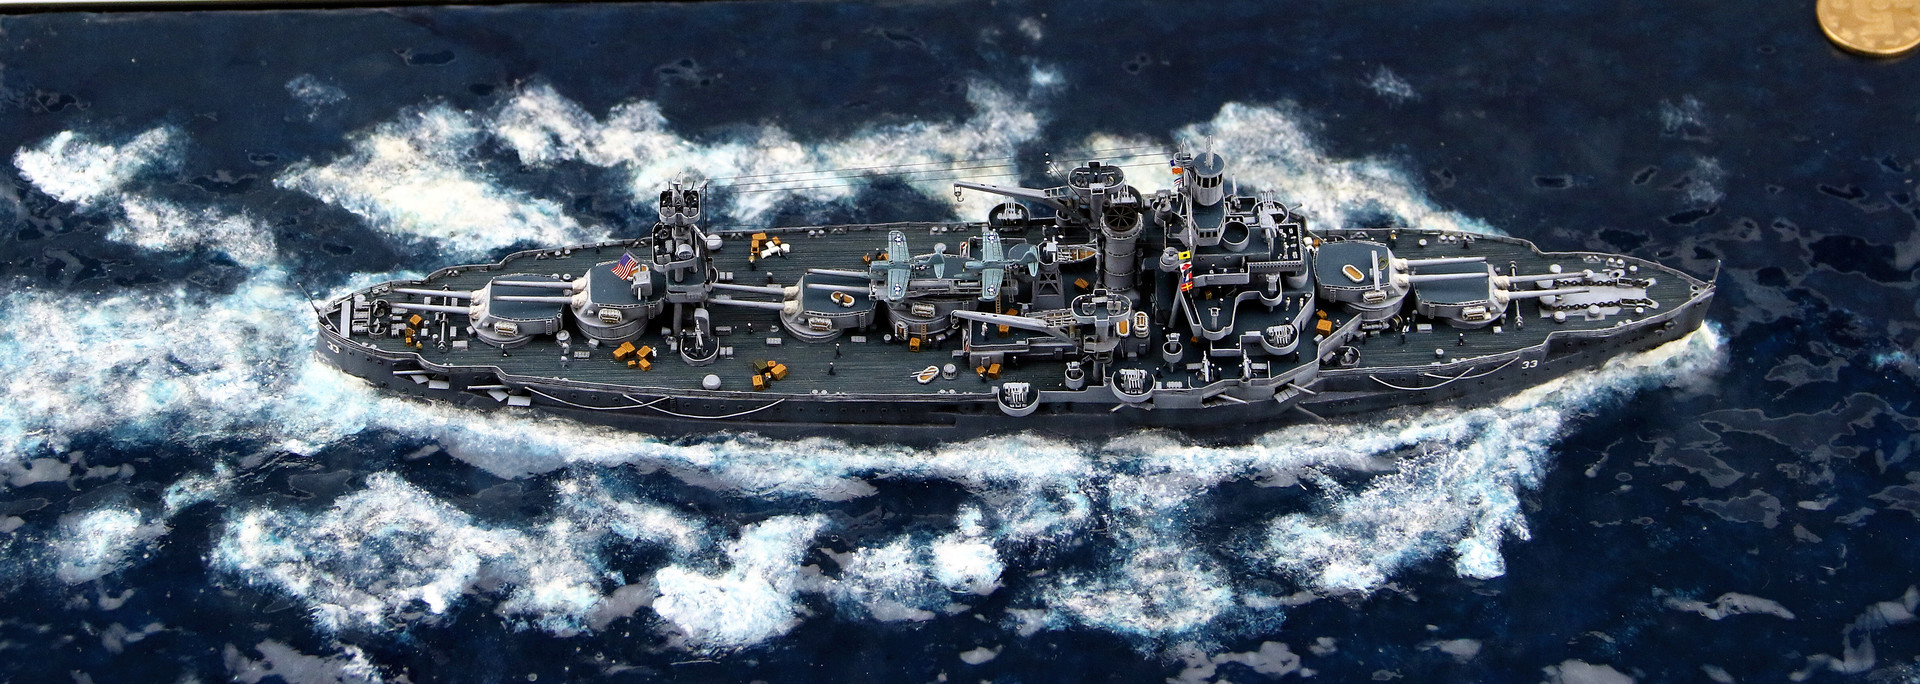 舰船欣赏:美国海军 怀俄明级战列舰